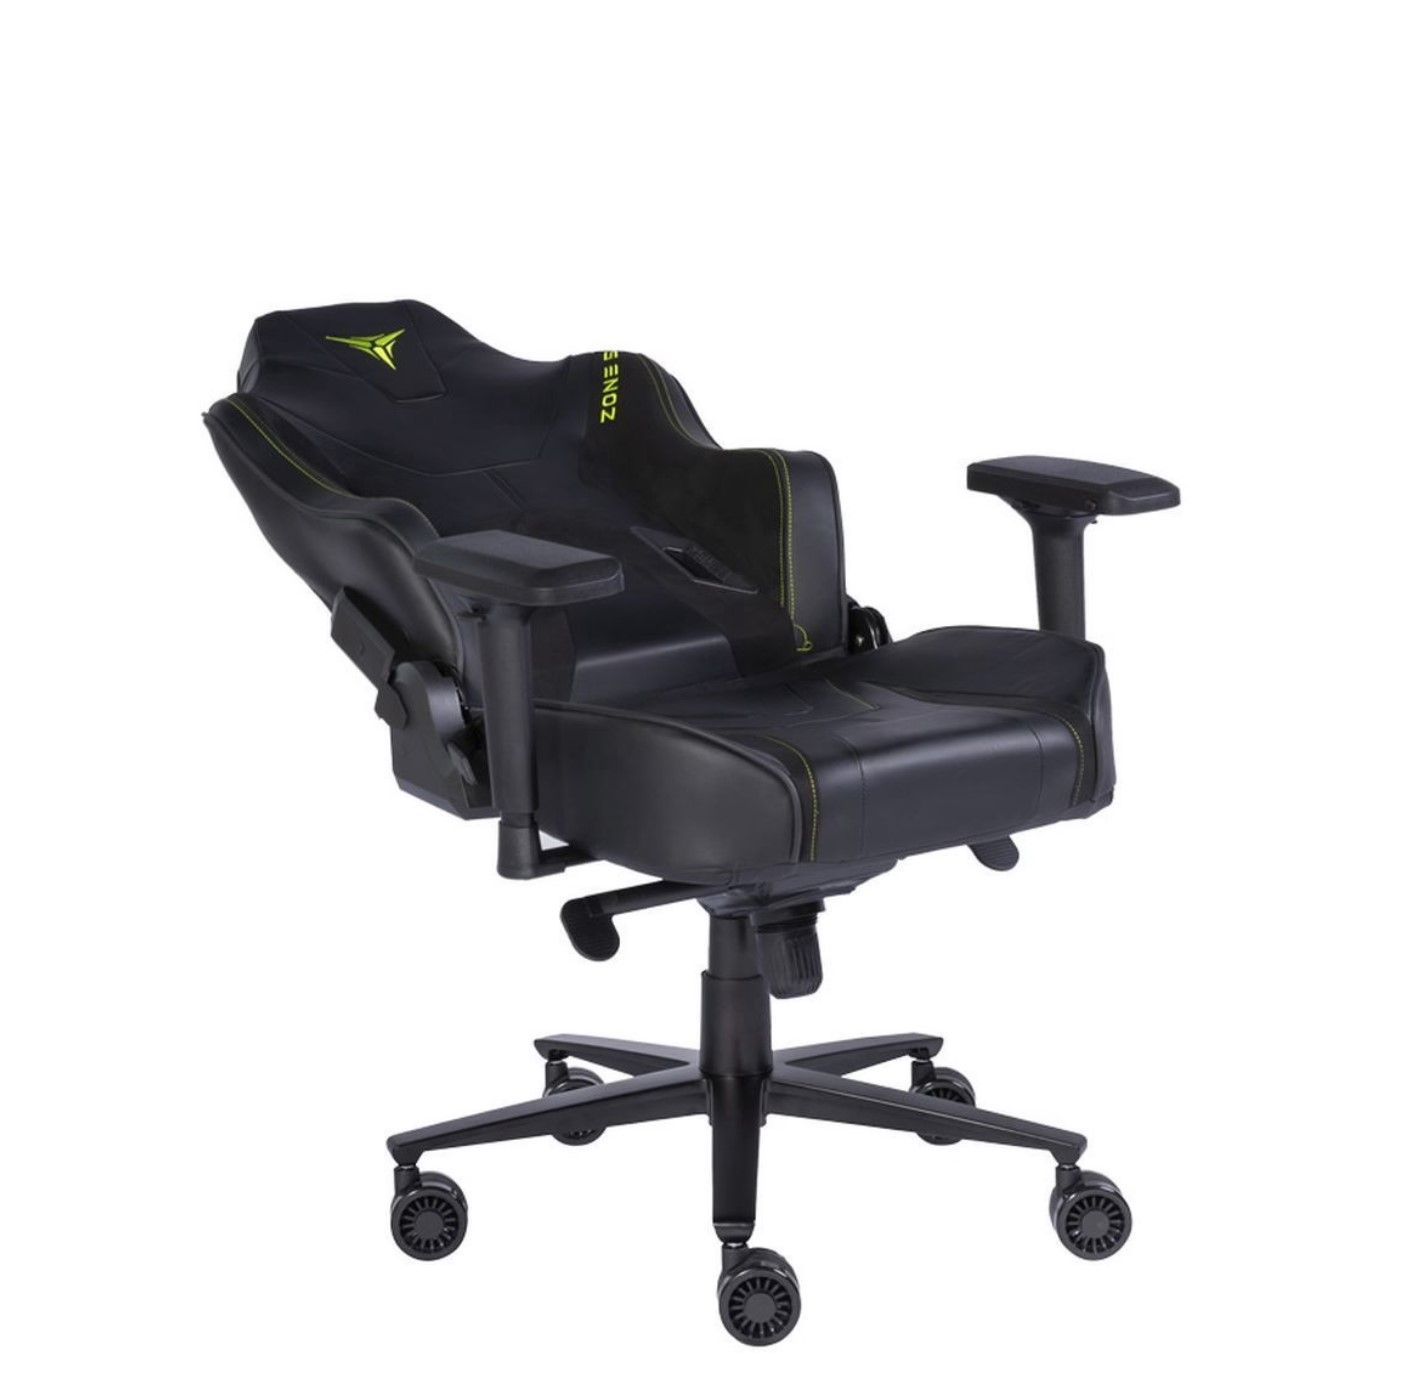 Кресло компьютерное игровое ZONE 51 Armada Black (Z51-ARD-B)